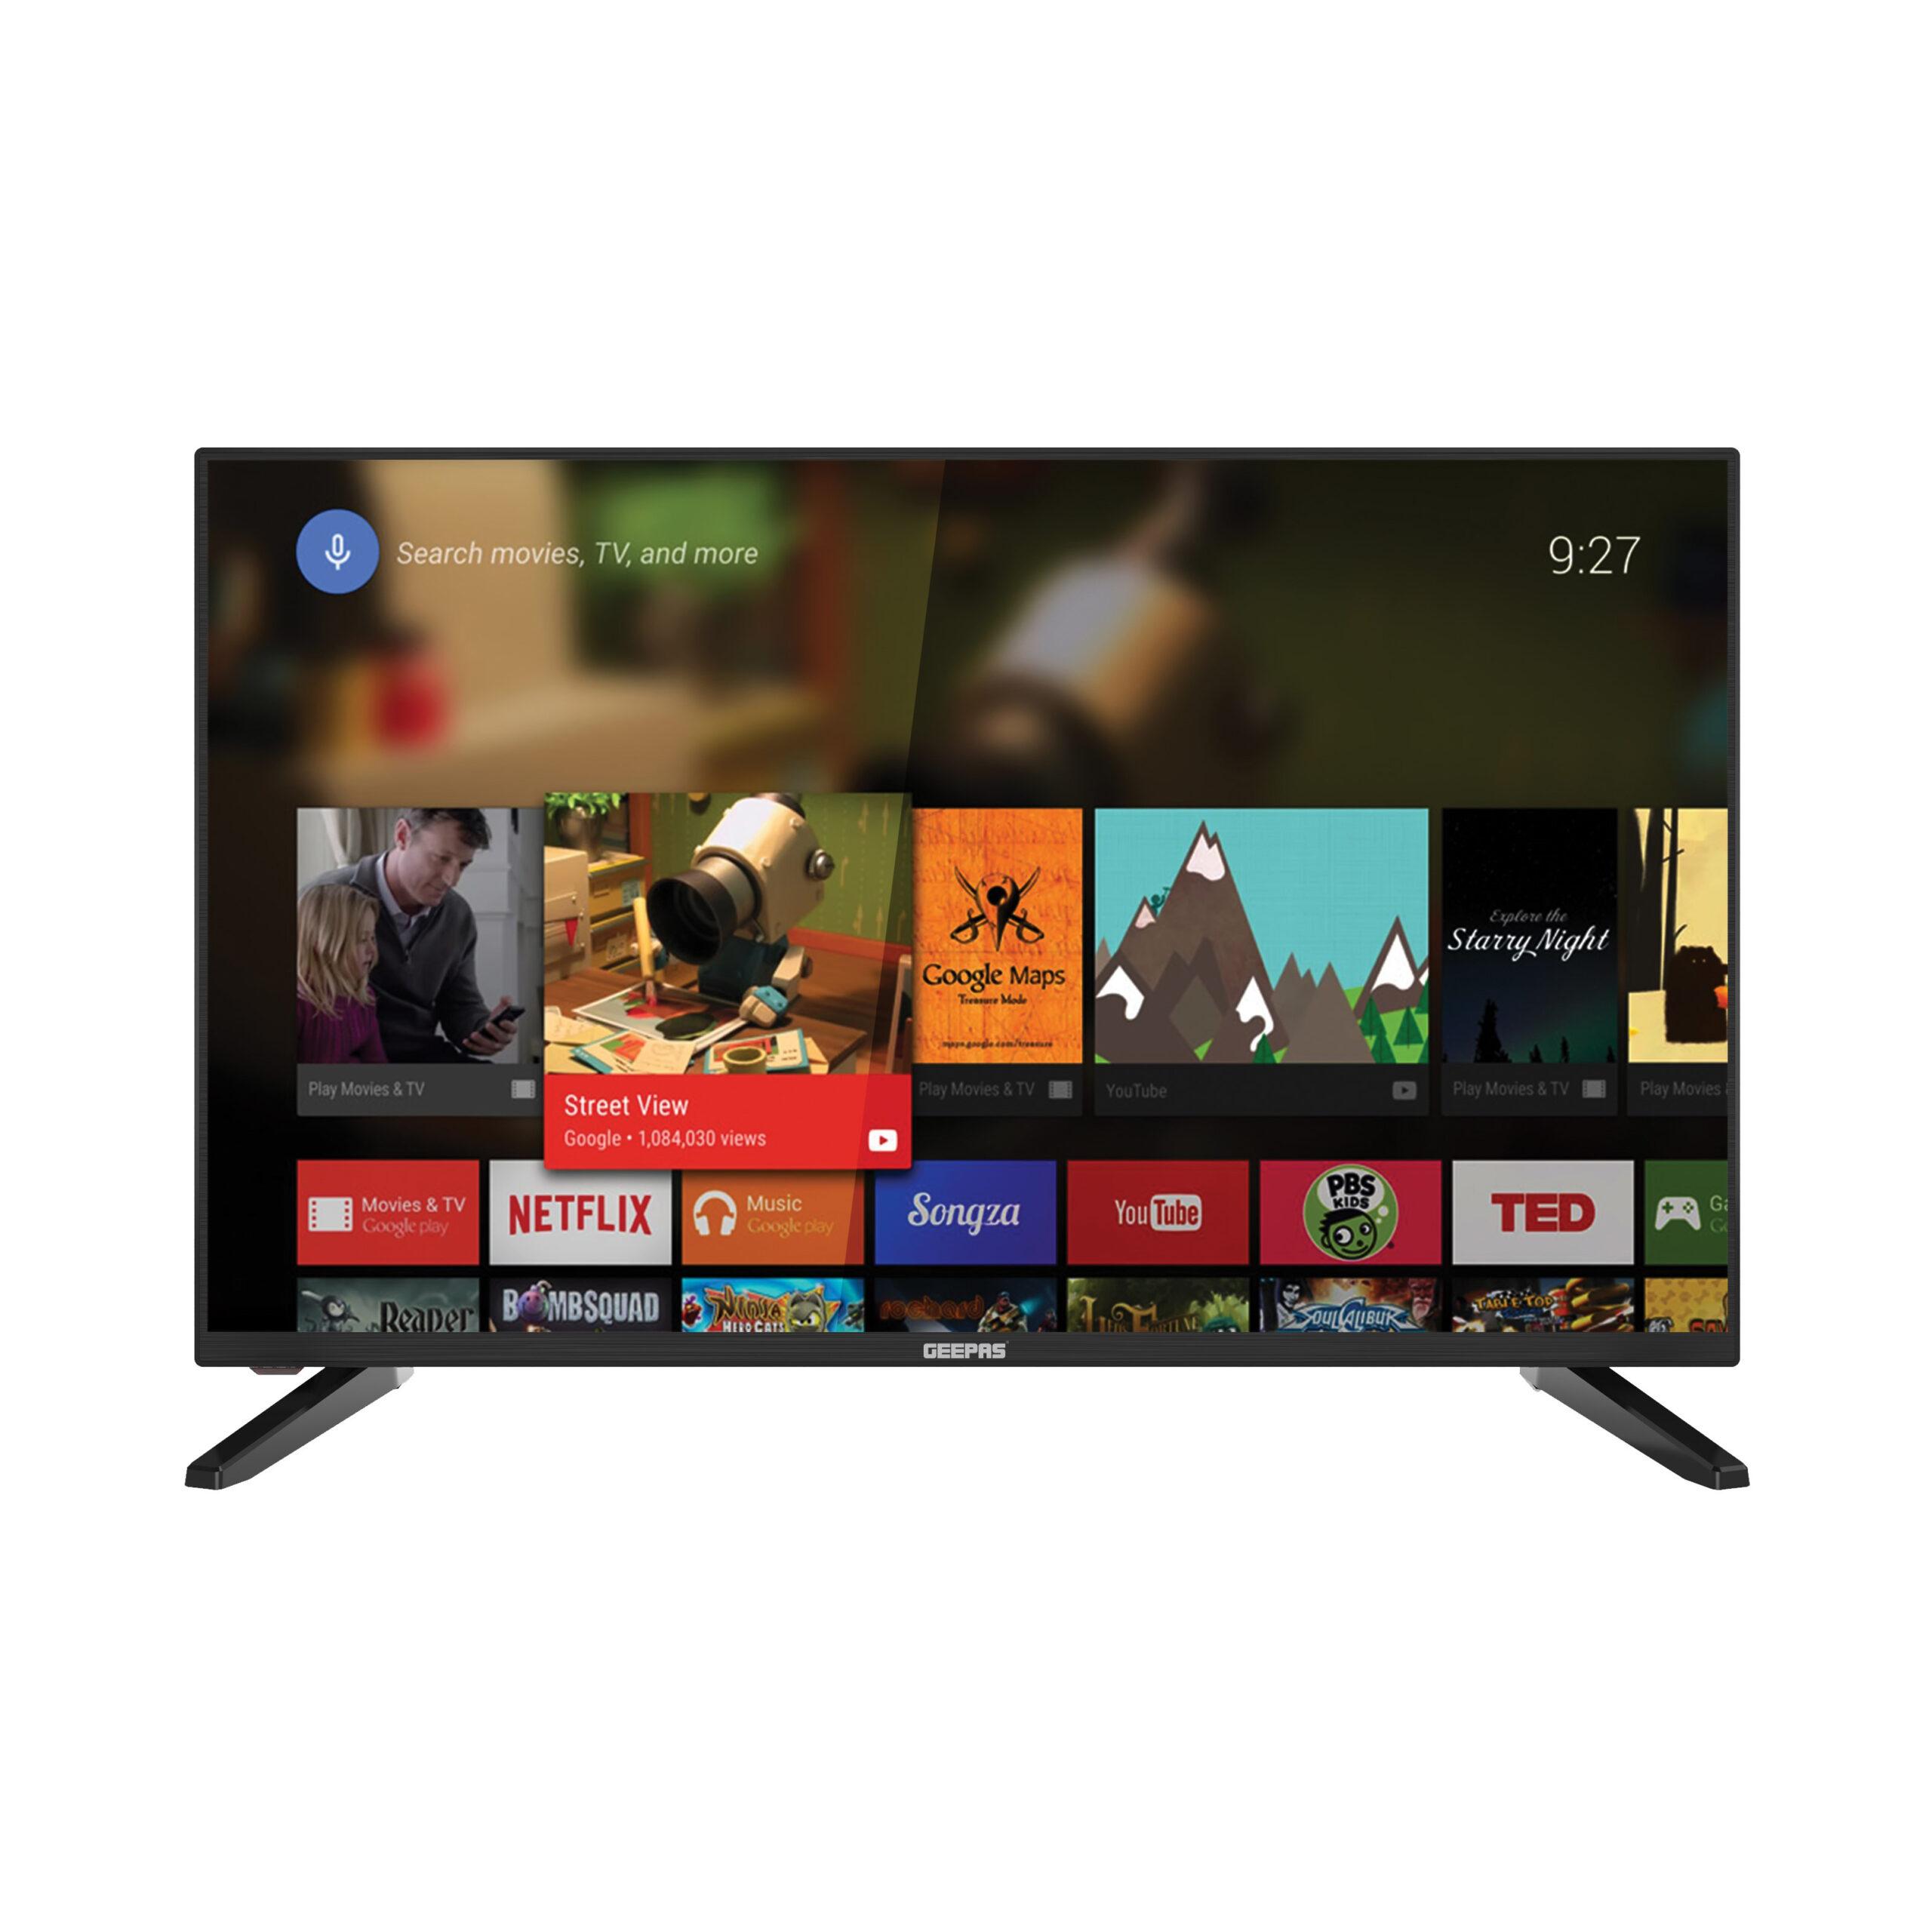 شاشة تلفزيون اندرويد سمارت 32 بوصة Geepas Android Smart TV 32 inch